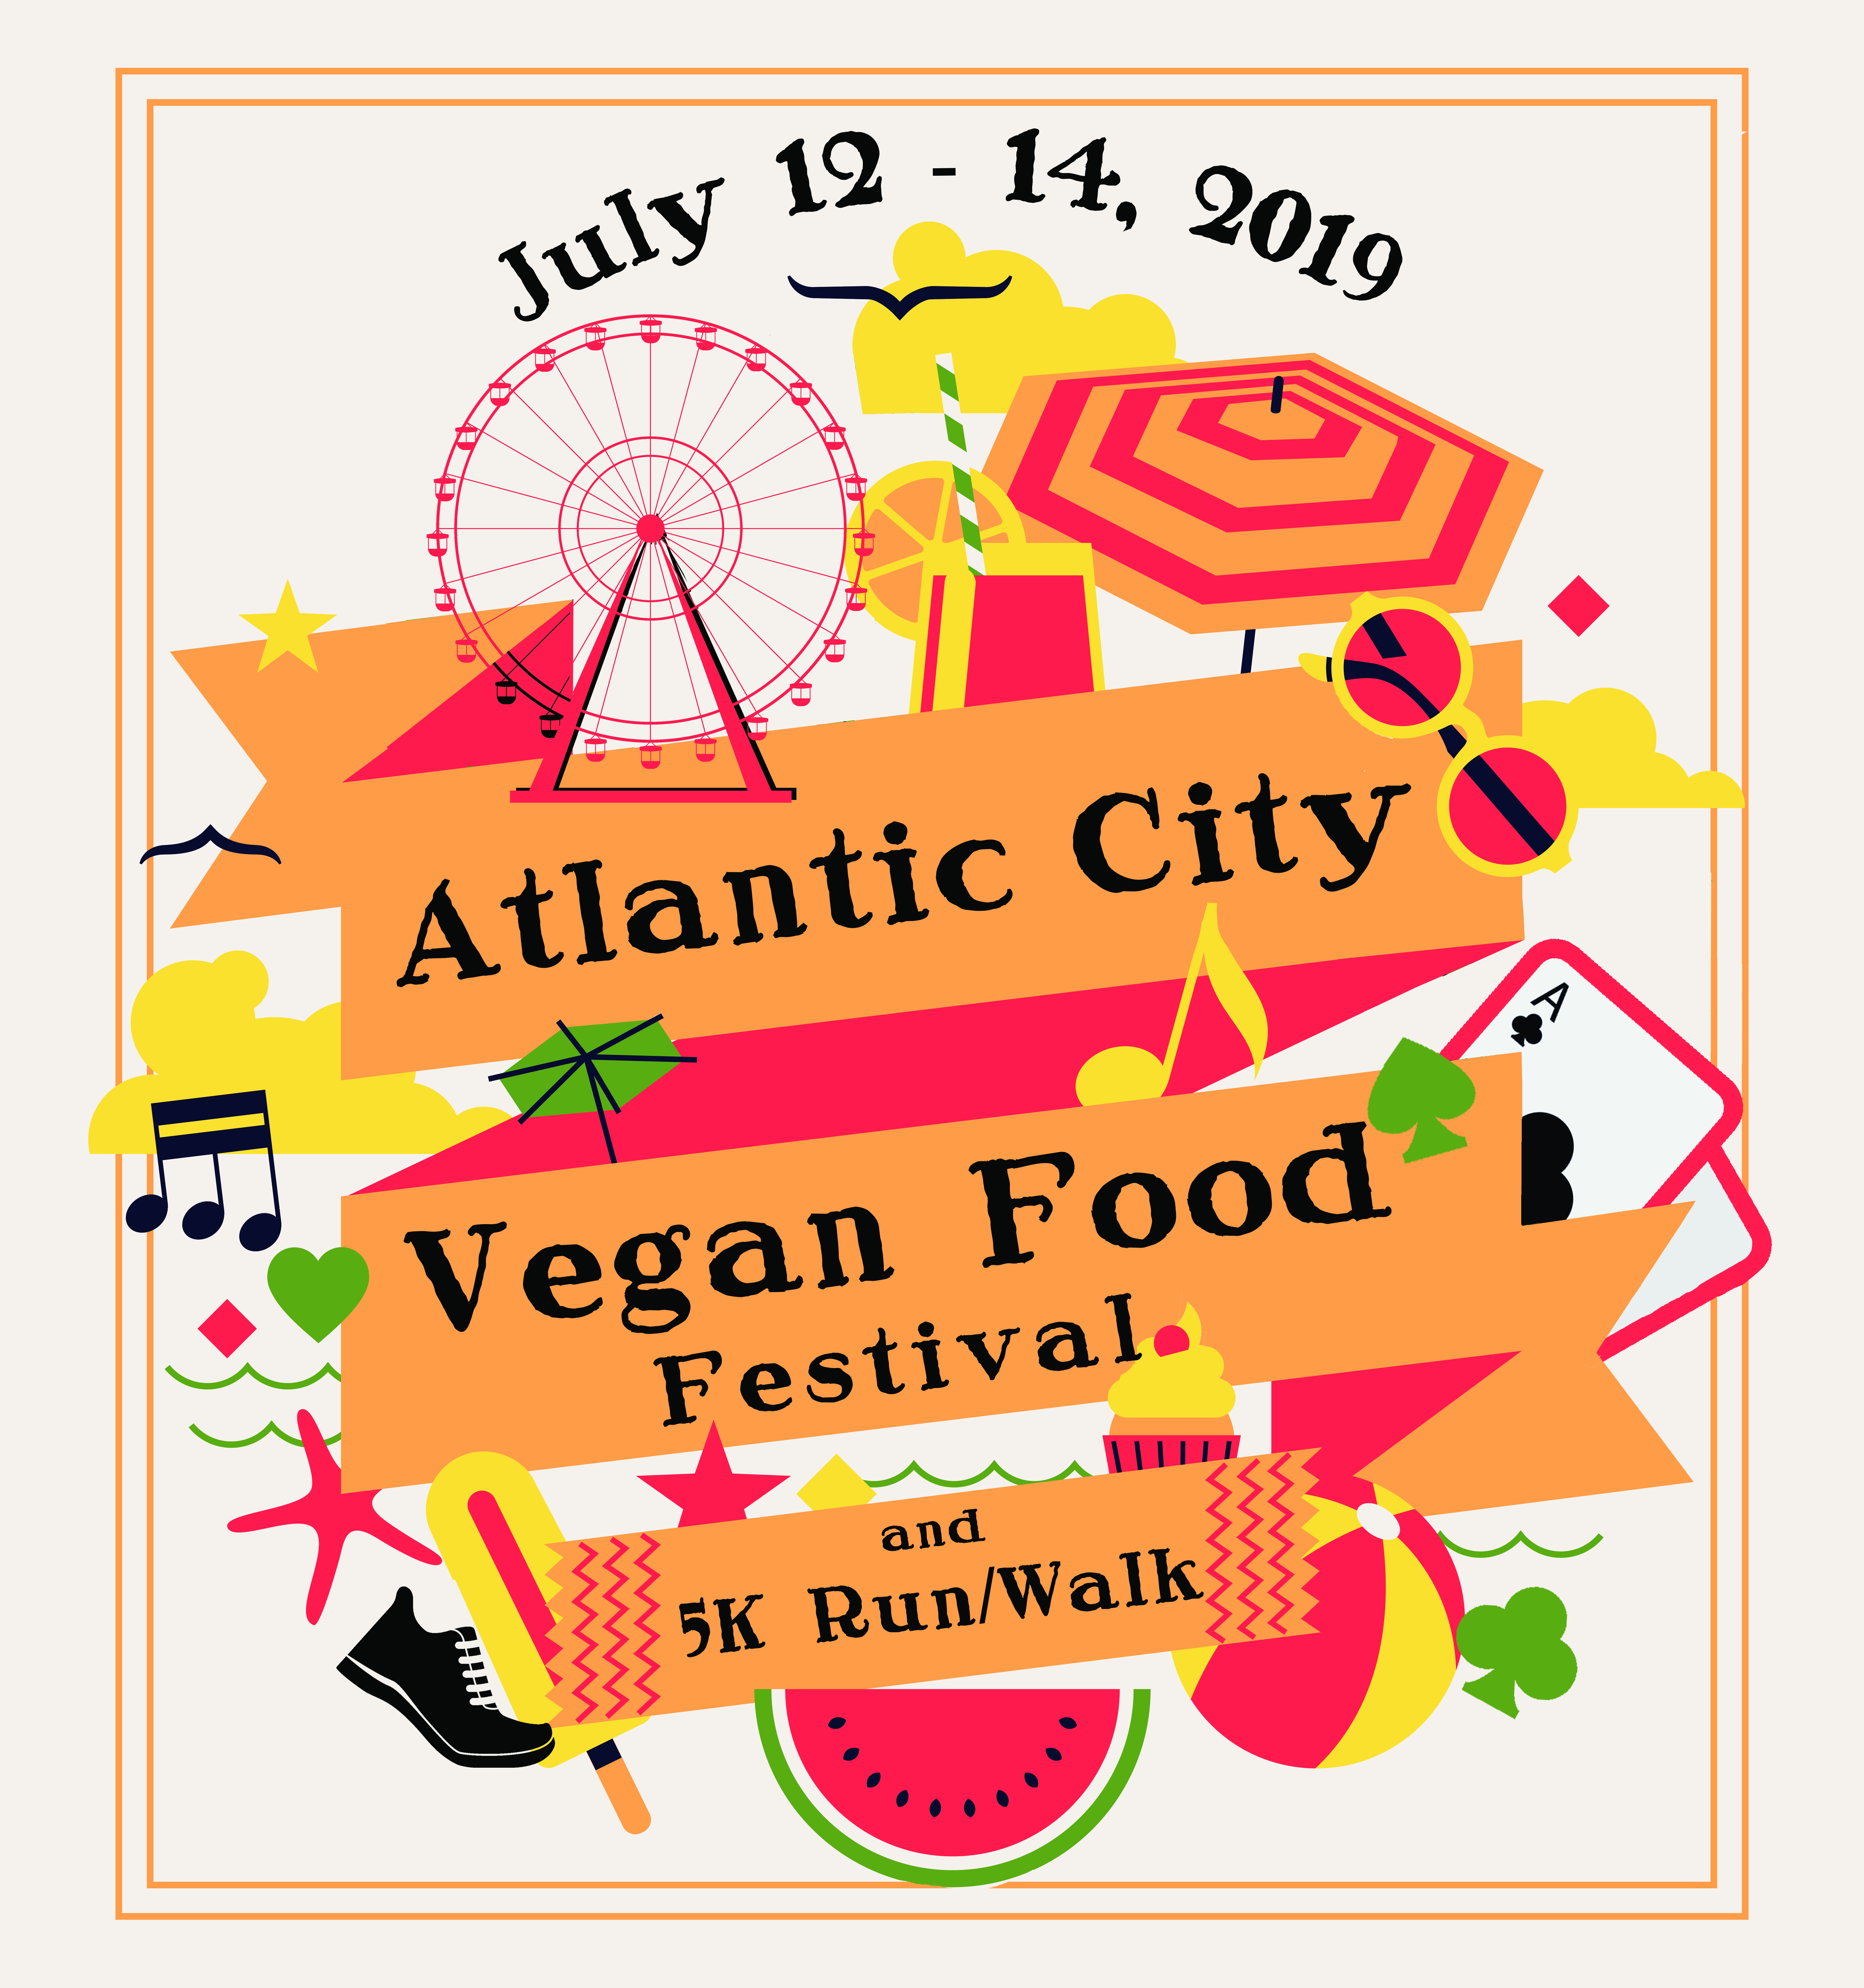 2019 ac vegan food fest logo w date (2)